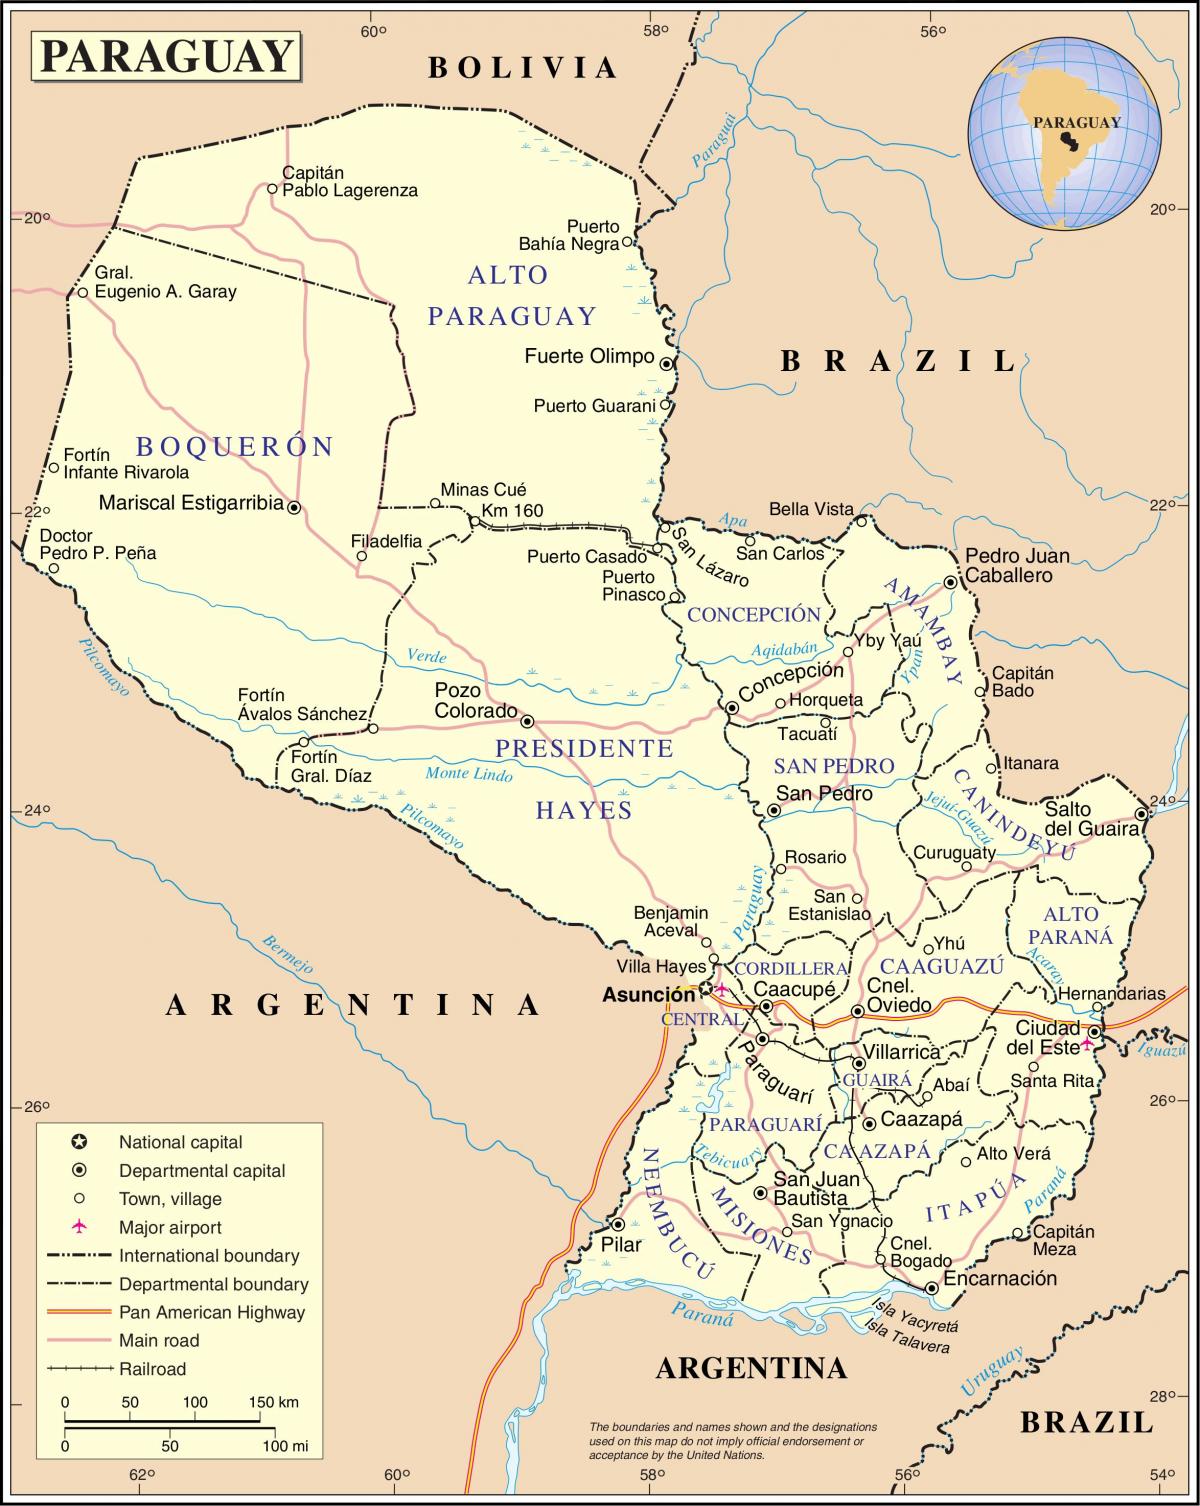 Ramani ya cateura Paraguay 